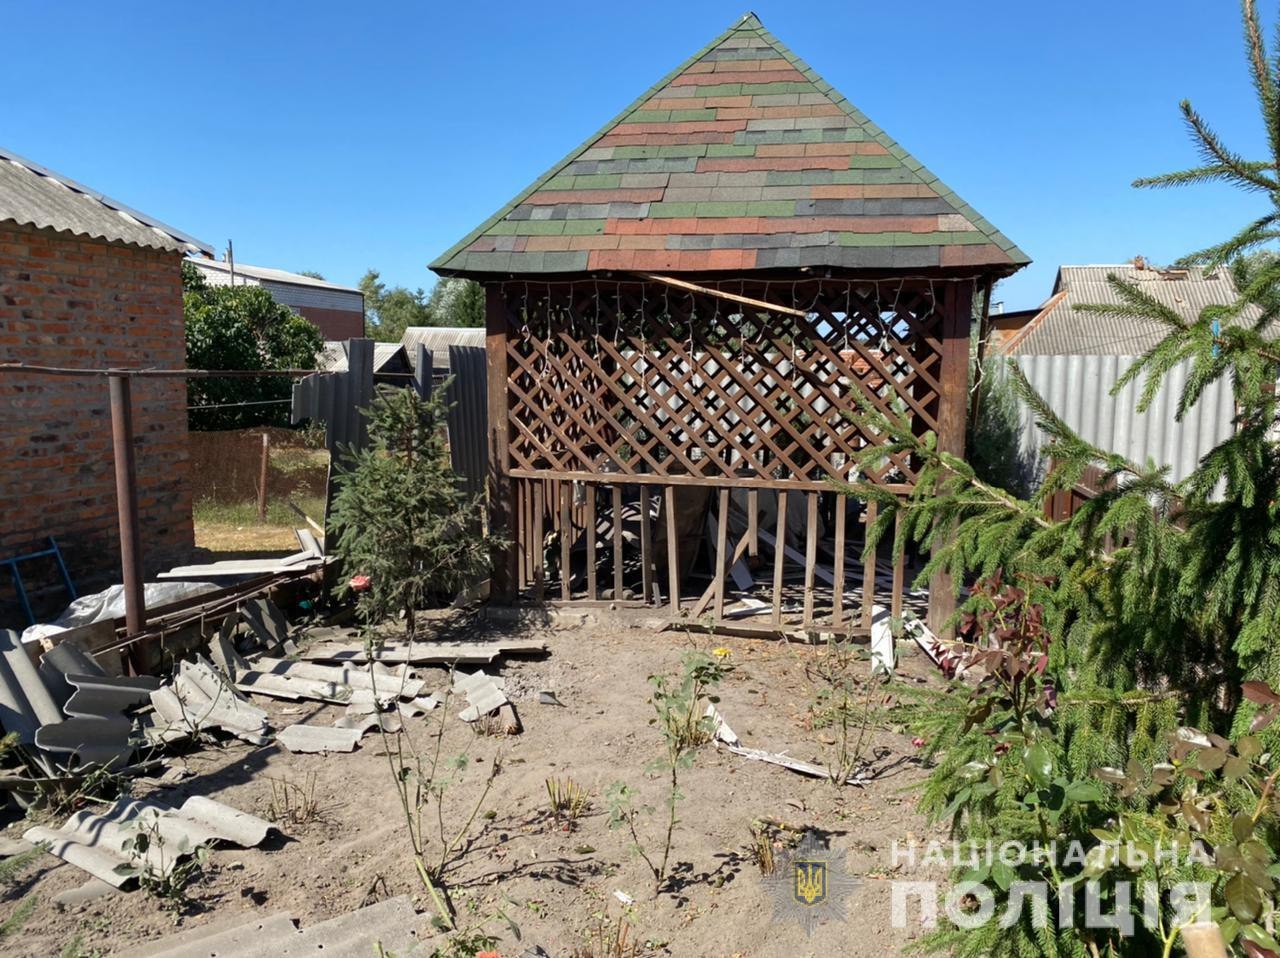 В результате обстрелов в Малой Даниловке было разрушено 11 домов, ранены два человека 